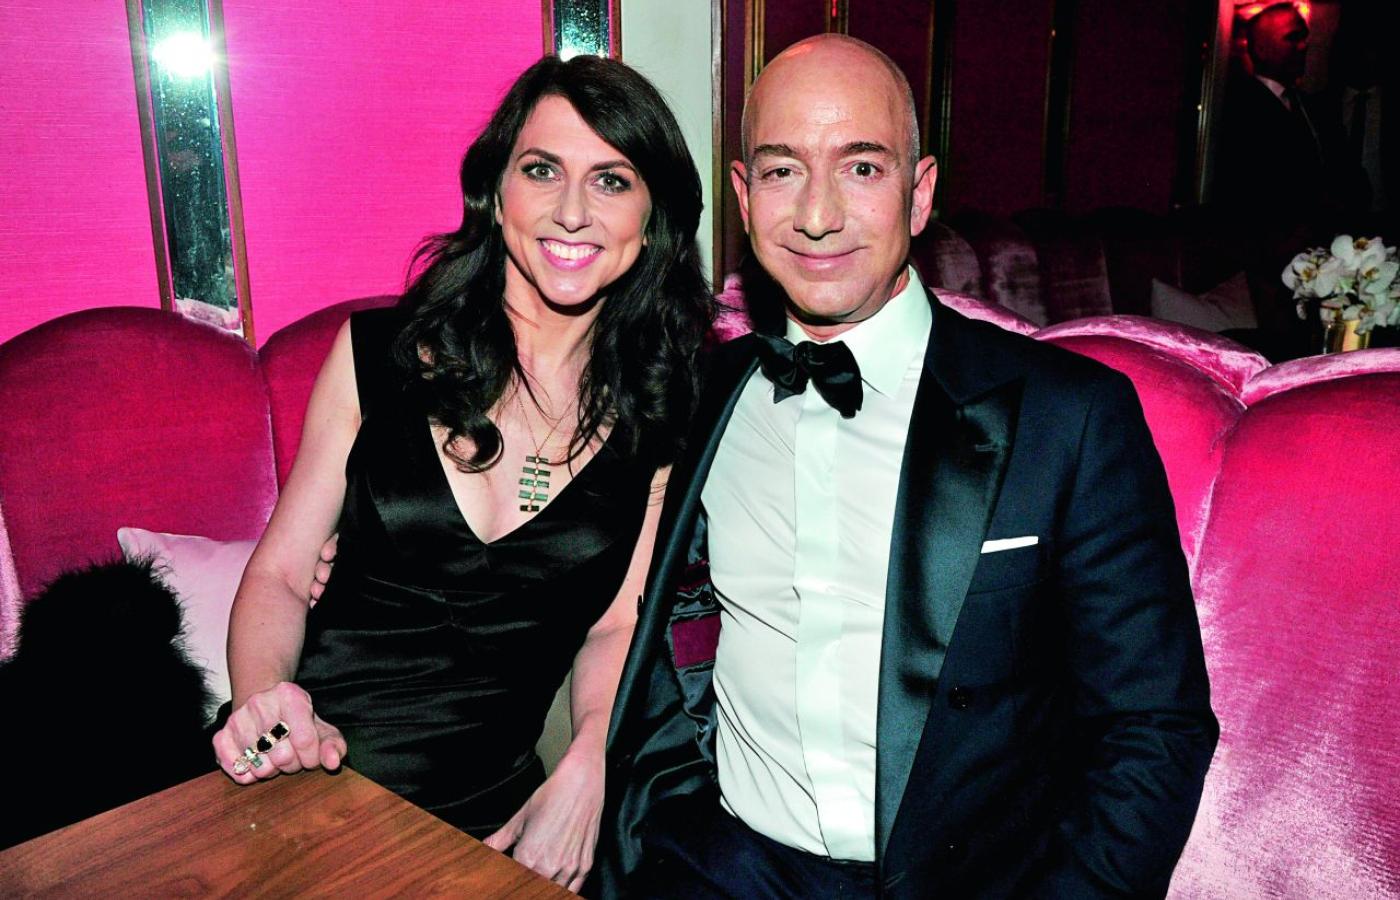  Mackenzie Bezos, rozwiedziona dziś z właścicielem Amazona. Jej plan: 20 mld dol. na cele charytatywne. (Fot. East News)